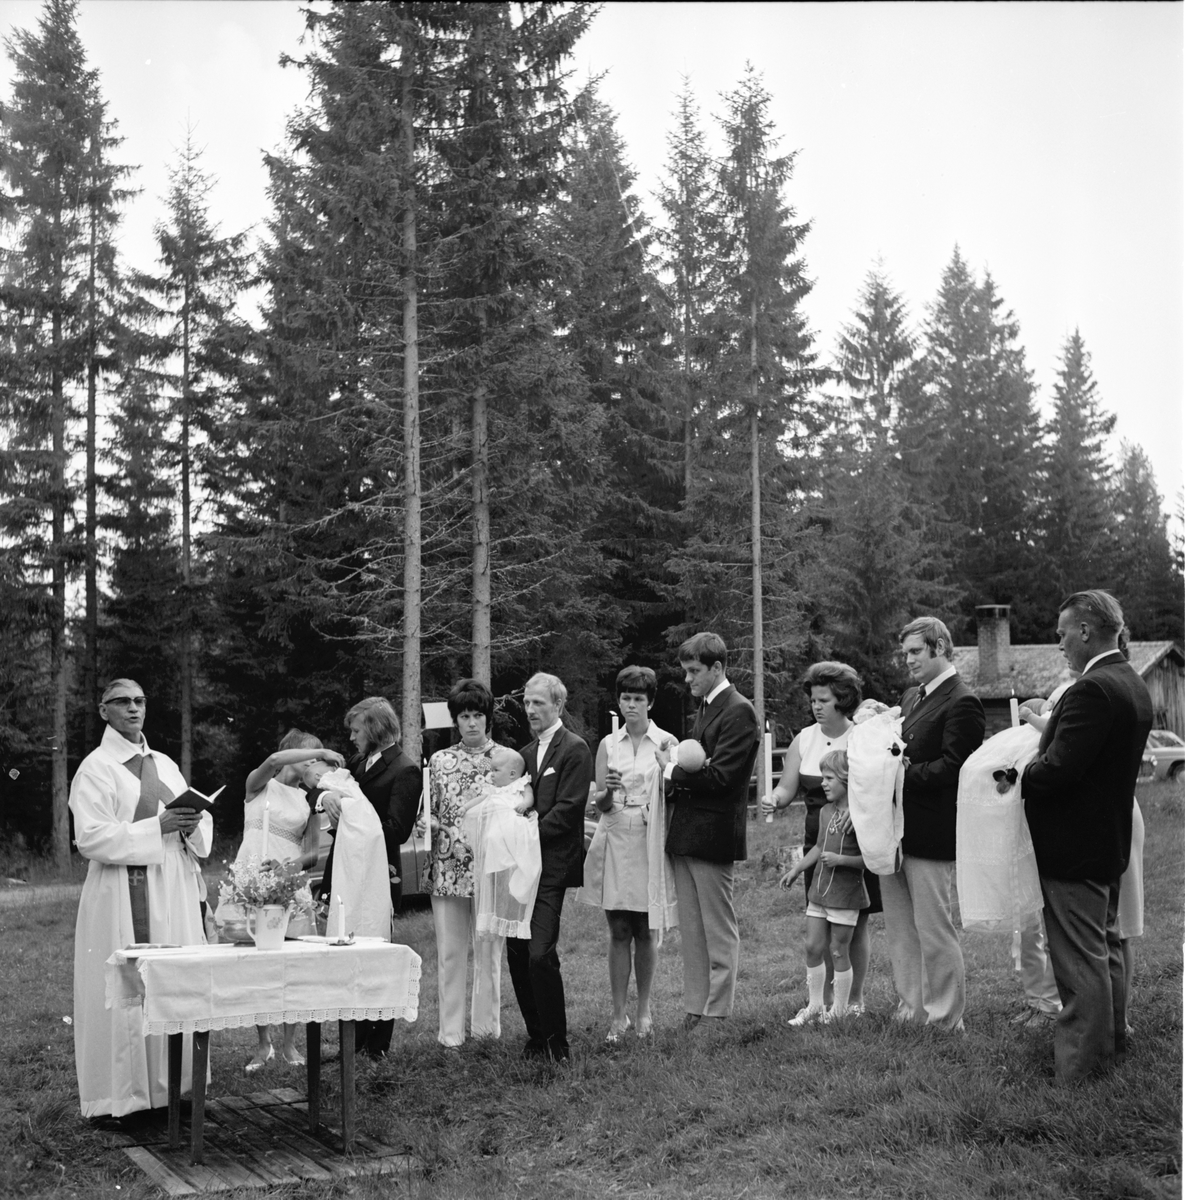 Möckelåsen,
Gudstjänst o Dop,
8 Augusti 1971